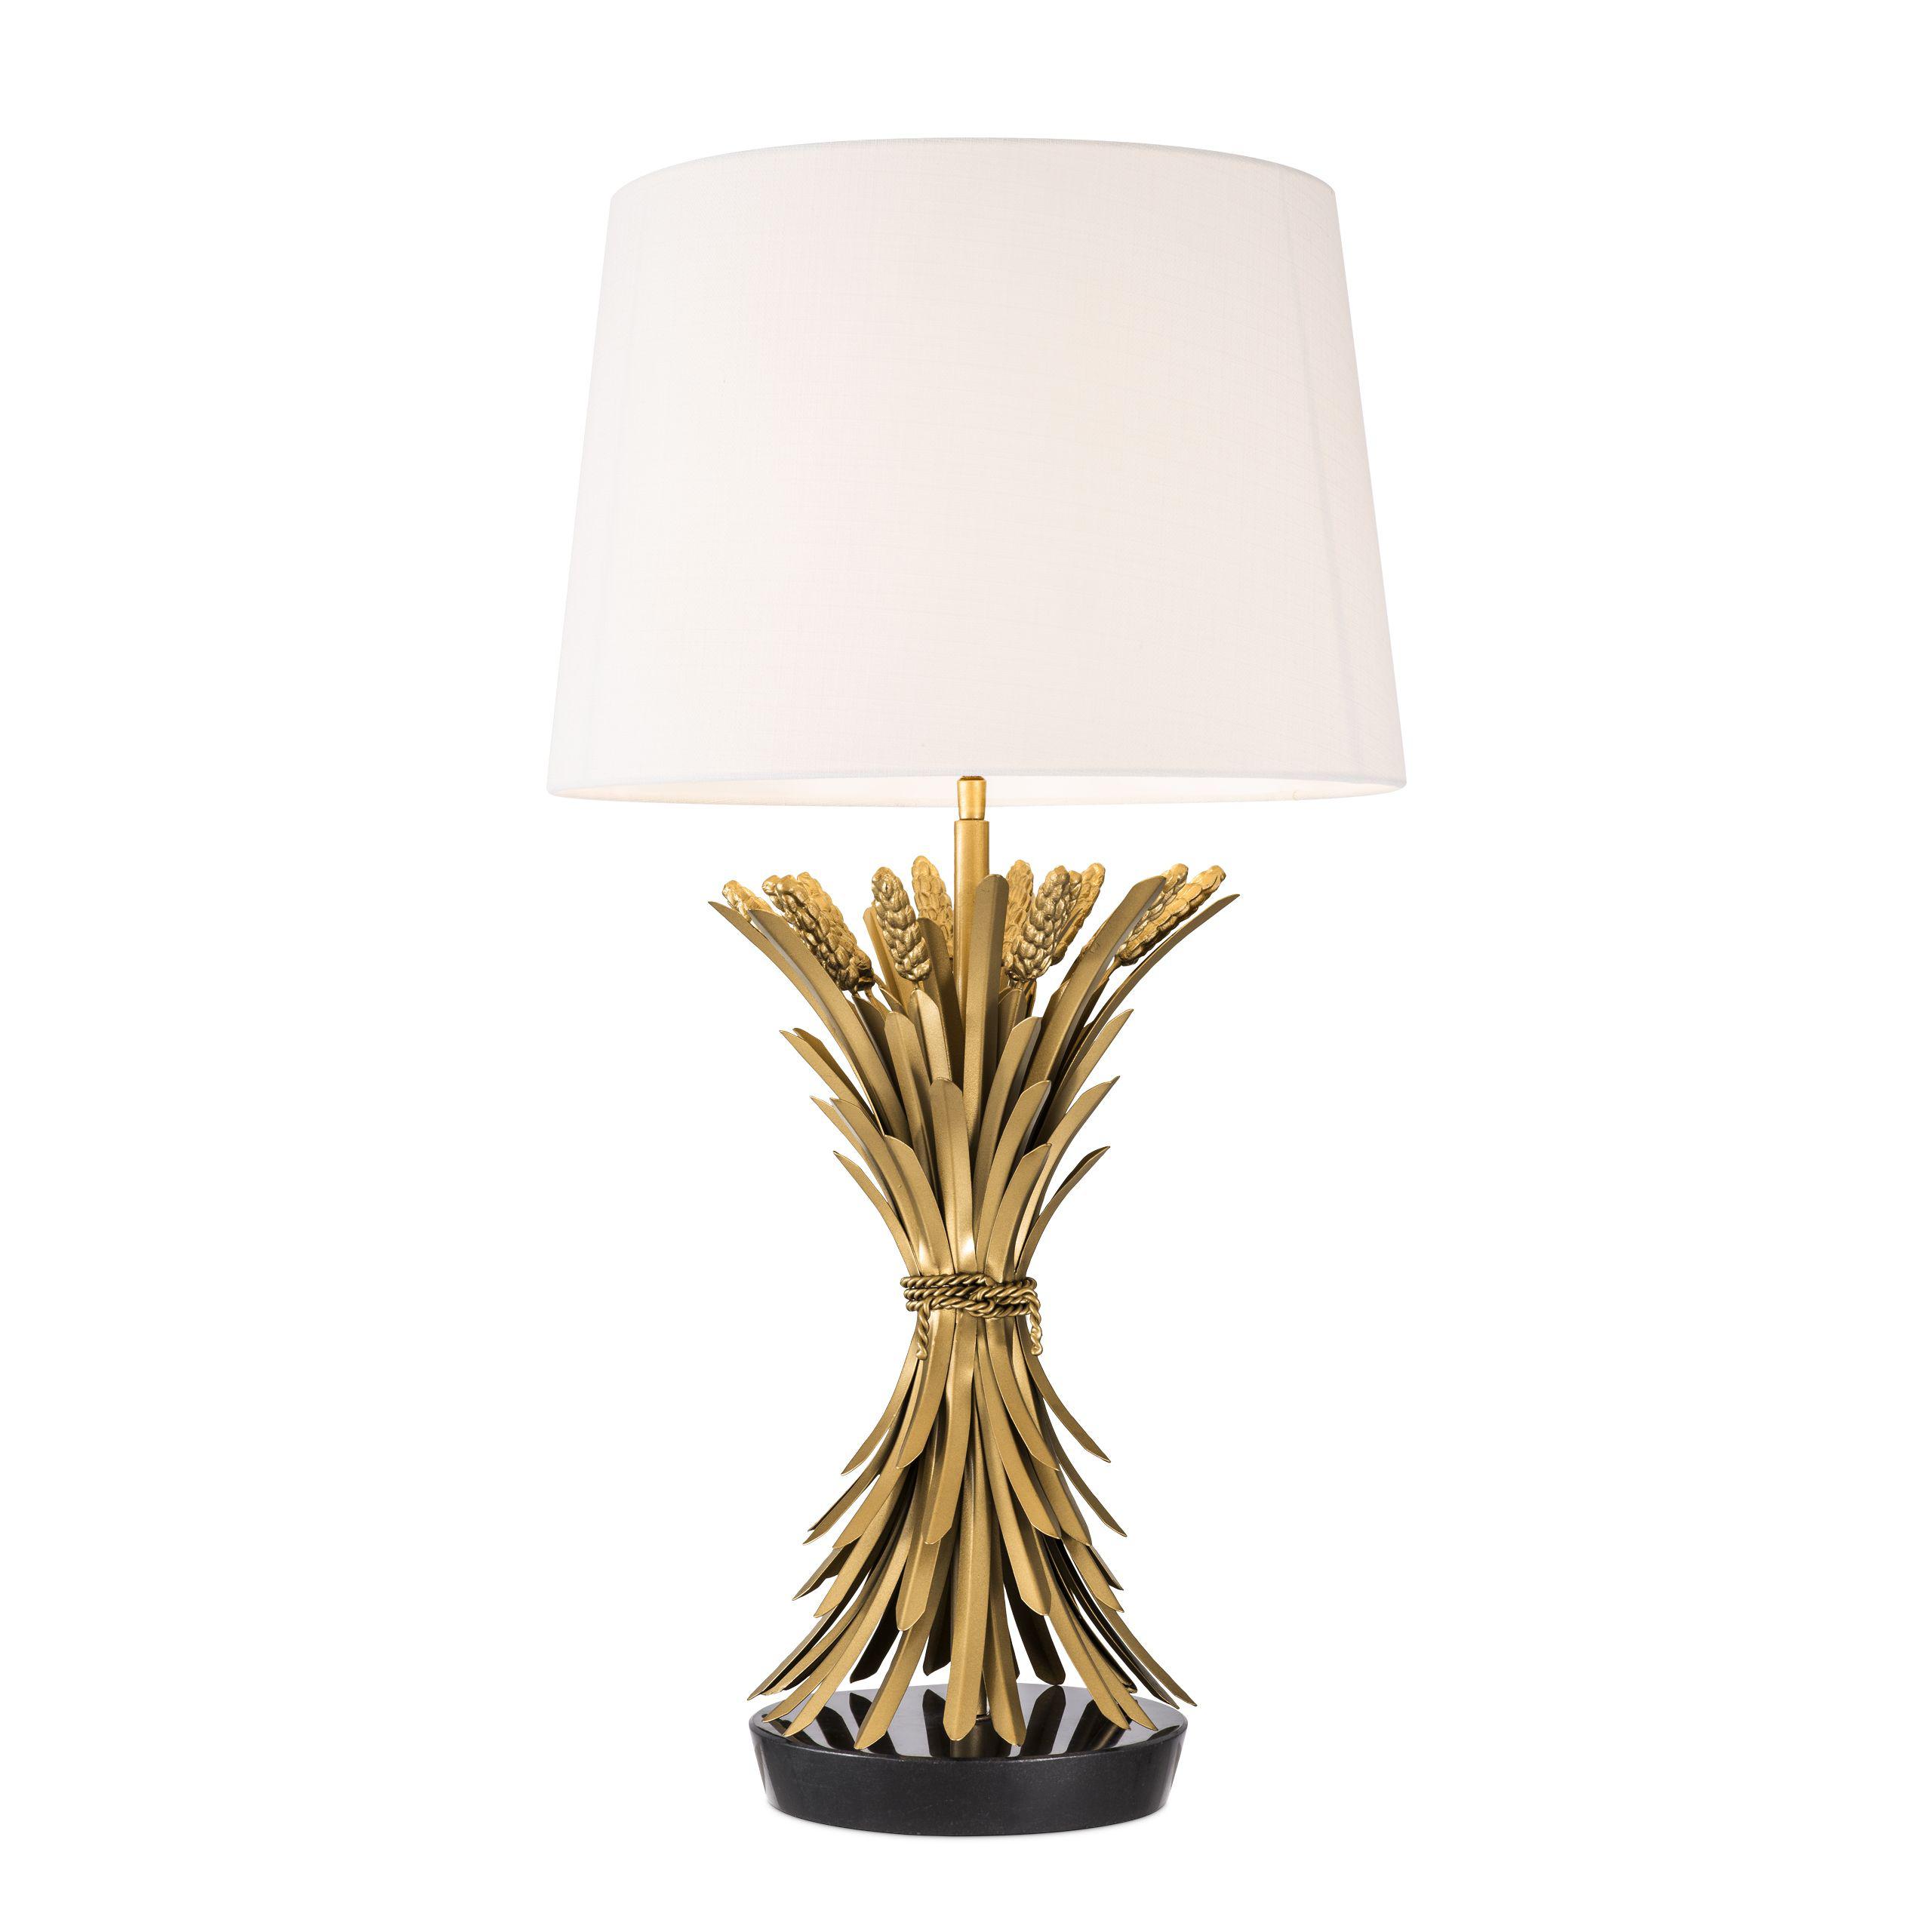 Купить Настольная лампа Table Lamp Bonheur в интернет-магазине roooms.ru